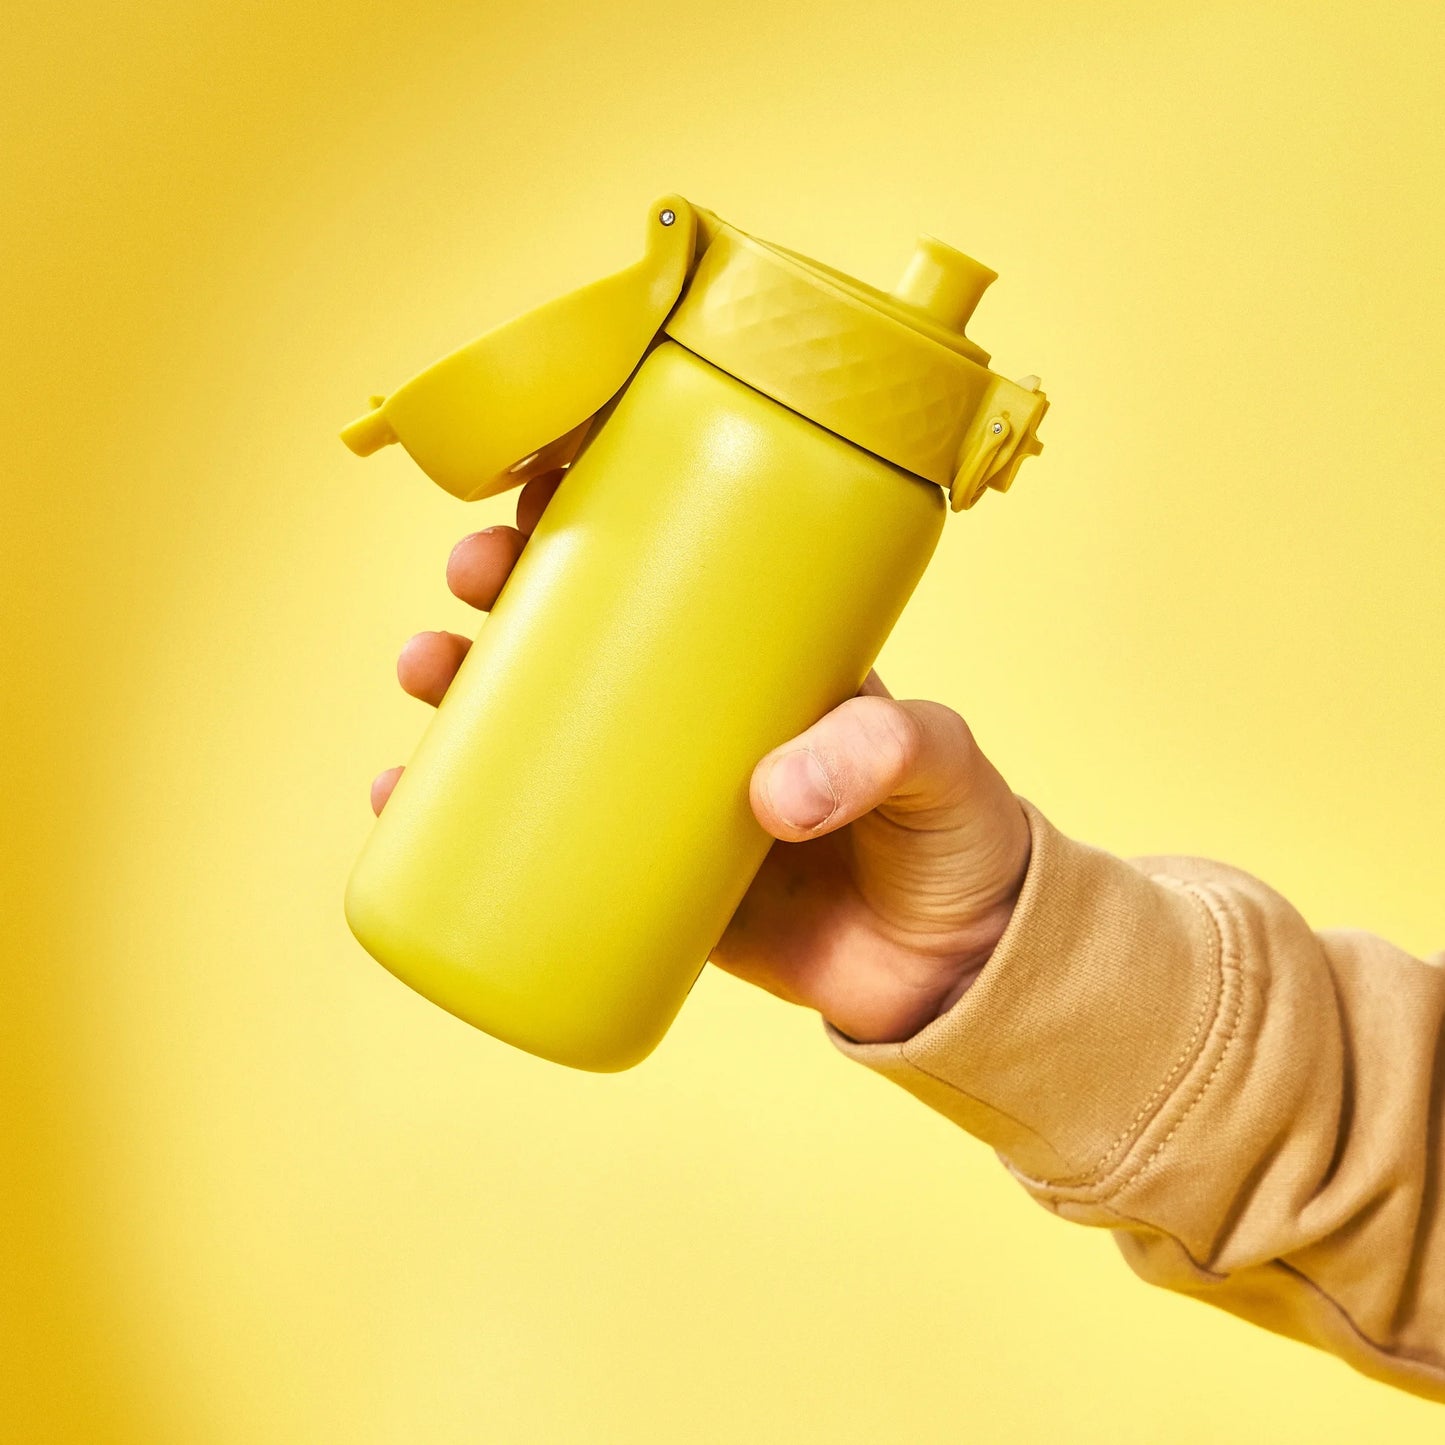 Leak Proof Kids Water Bottle, Stainless Steel, Yellow, 400ml (13oz)